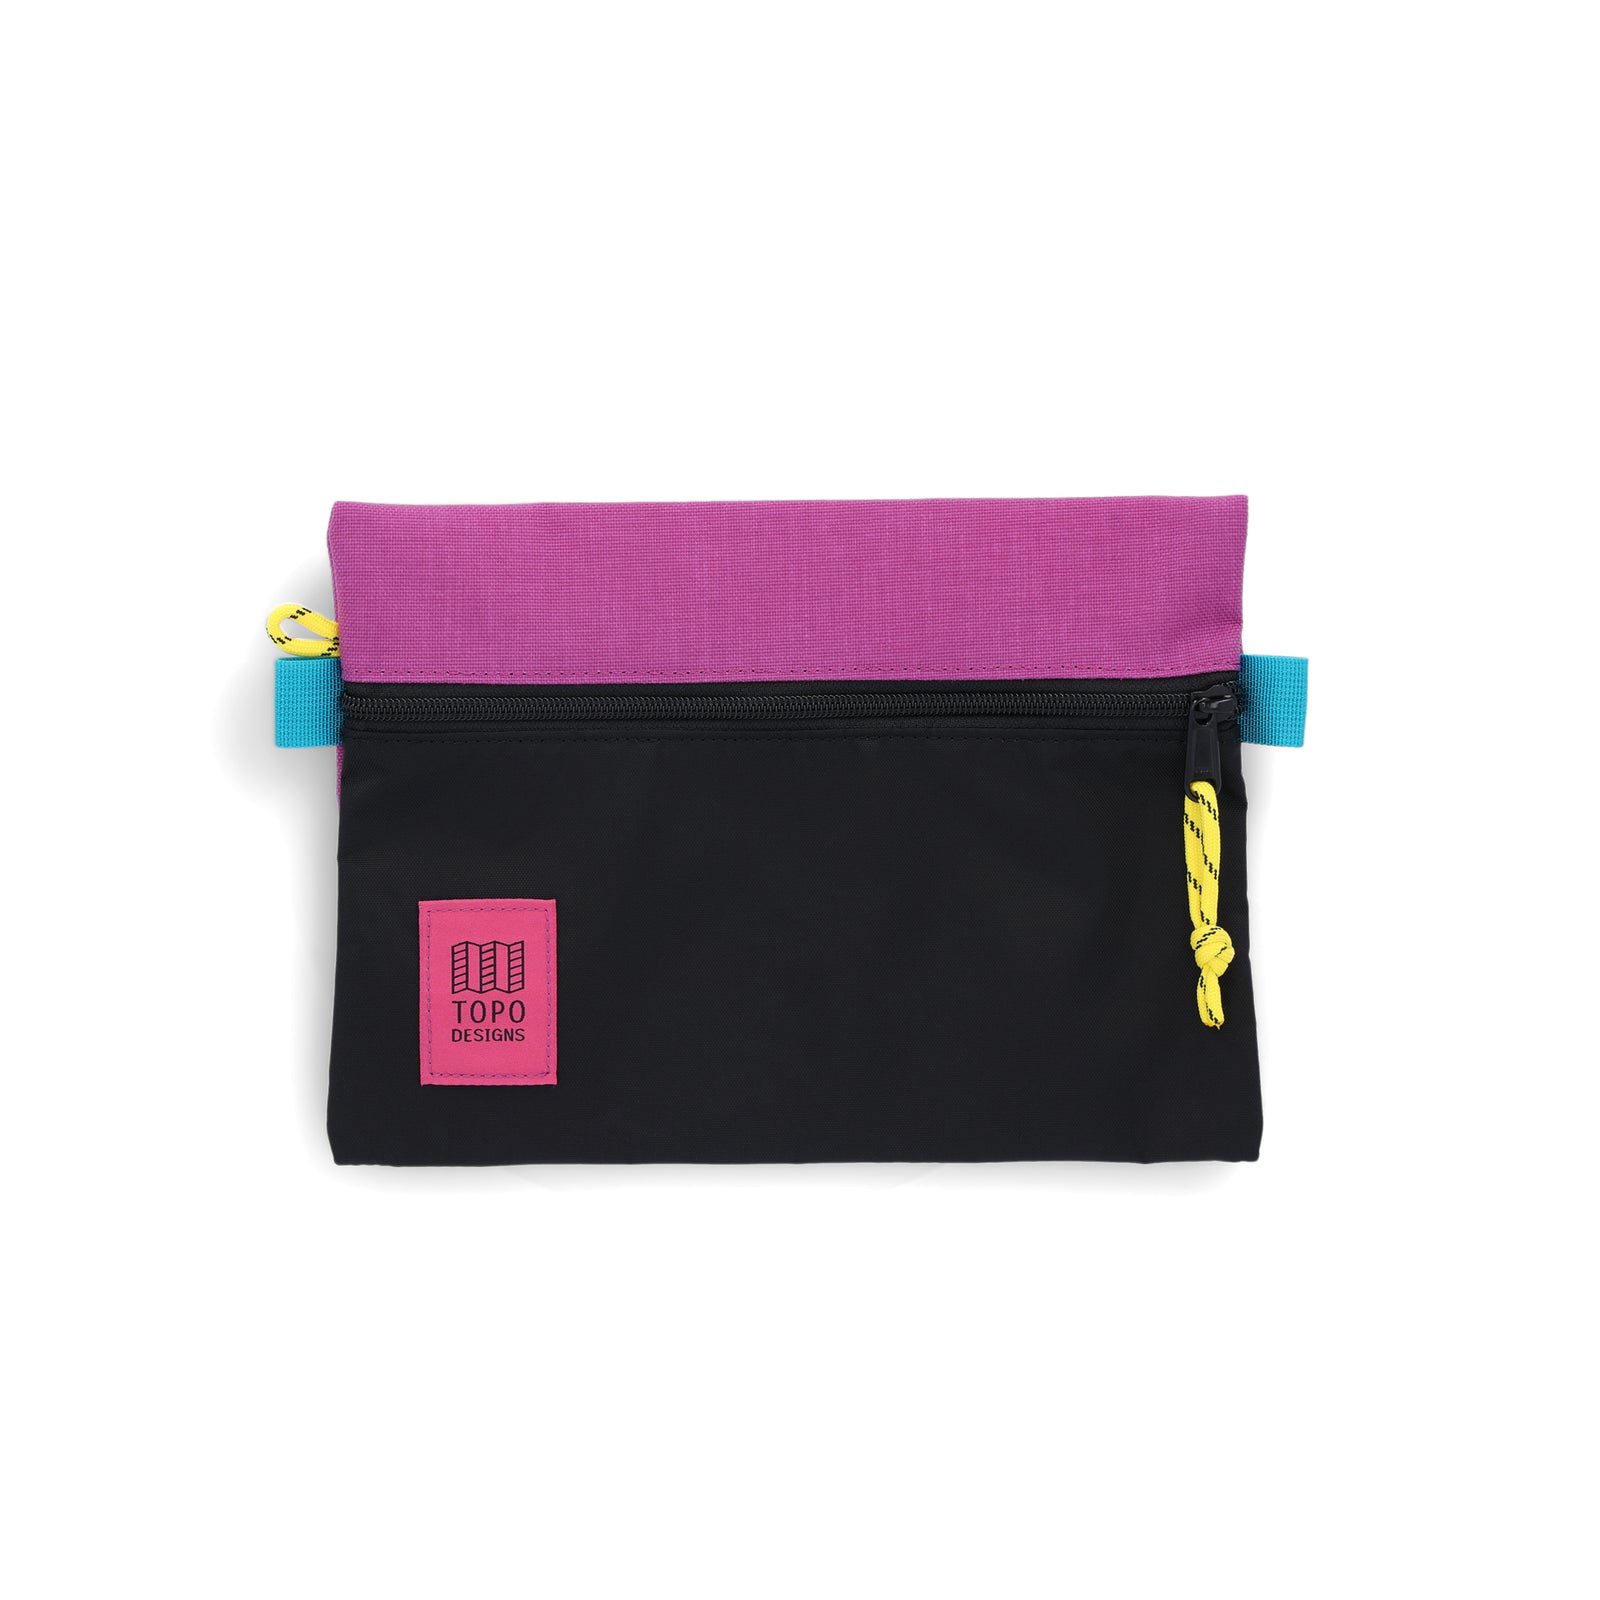 Topo Designs Accessory Bag in "Medium" "Black / Grape - Recycled" purple nylon.